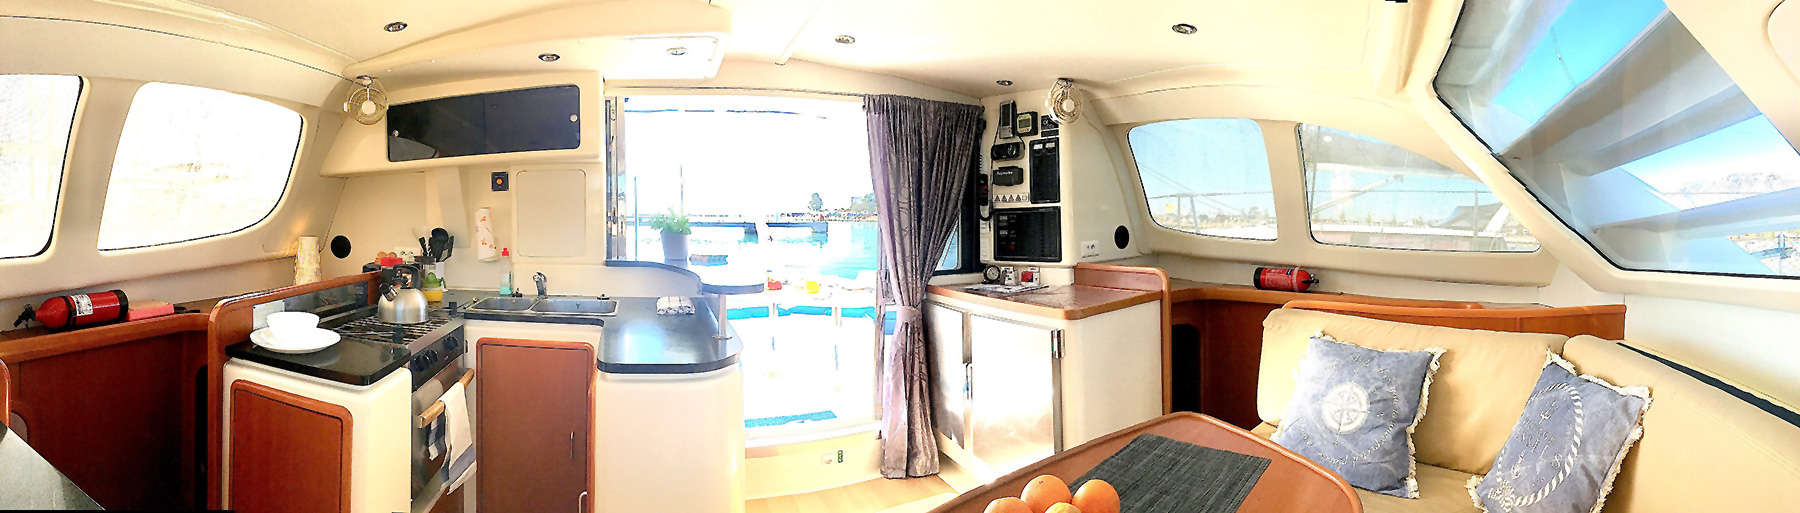 Excursión en catamaran en Ibiza, salón interior de nuestro catamaran en Ibiza